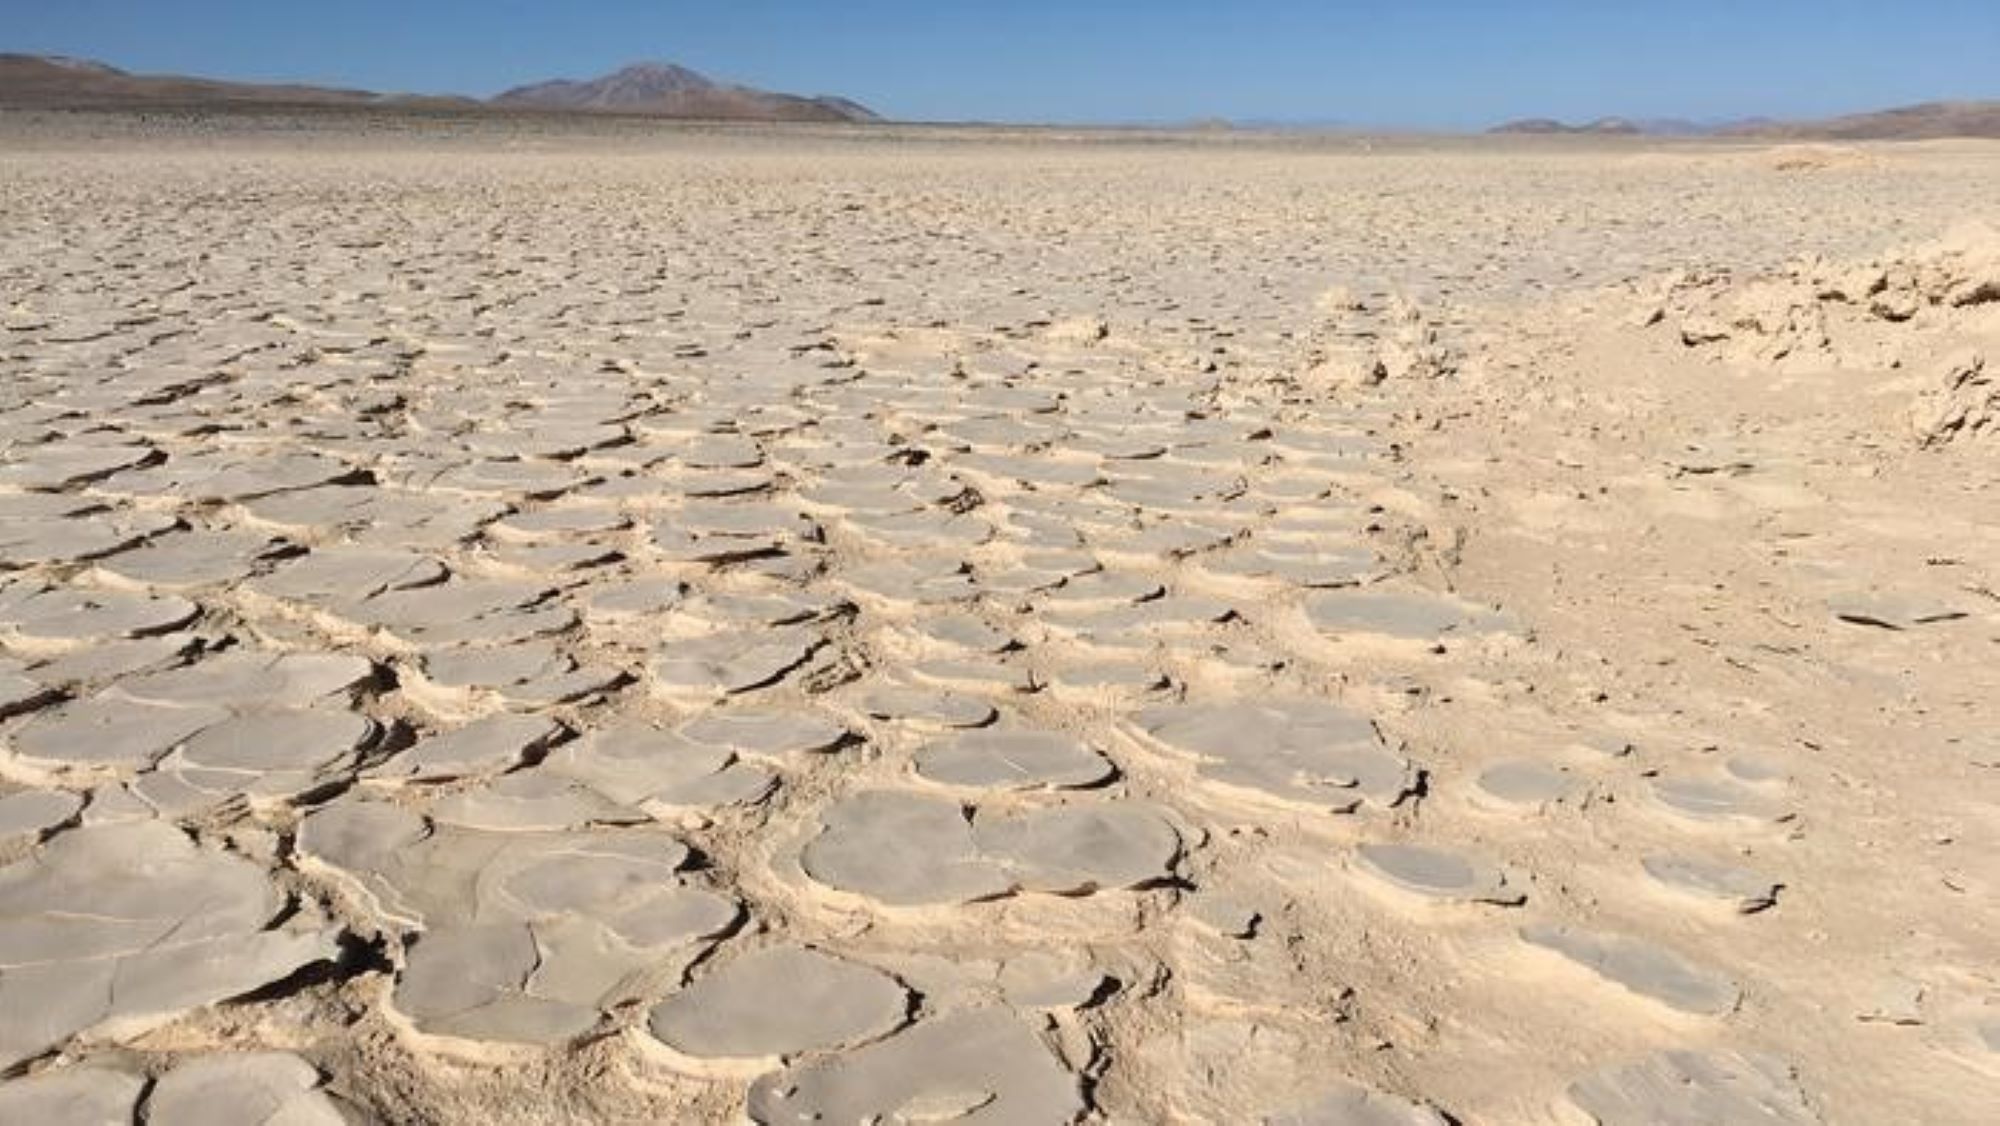 La “biosfera” nascosta di microbi estremi scoperta a 13 piedi sotto il deserto di Atacama è la più profonda trovata lì fino ad oggi